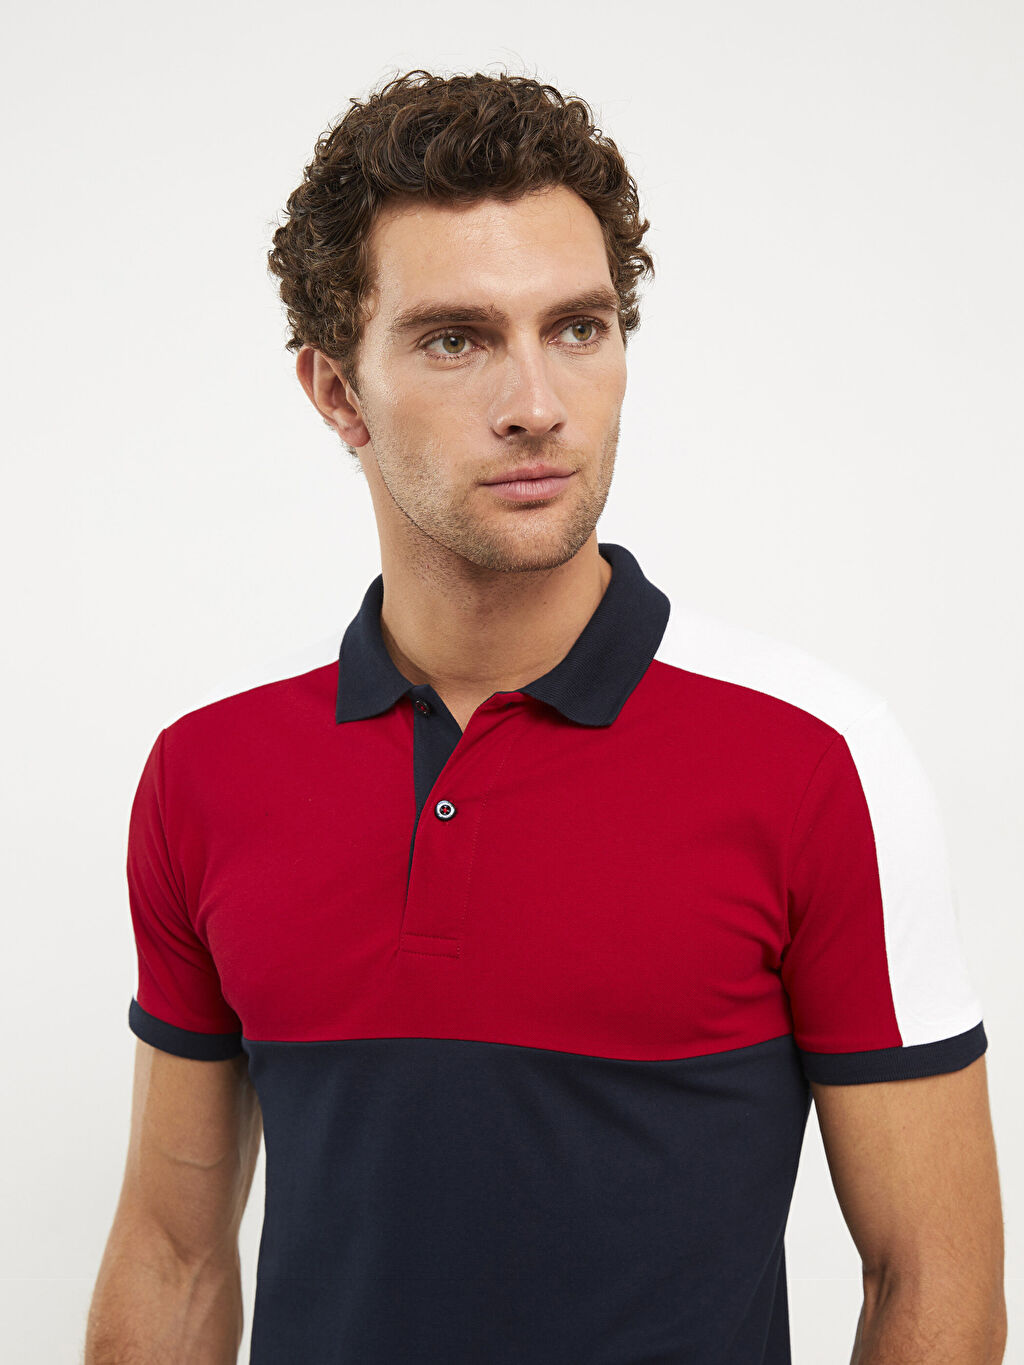 Мужская футболка с цветными блоками и короткими рукавами с воротником-поло Southblue – купить из-за границы через сервис «CDEK.Shopping»